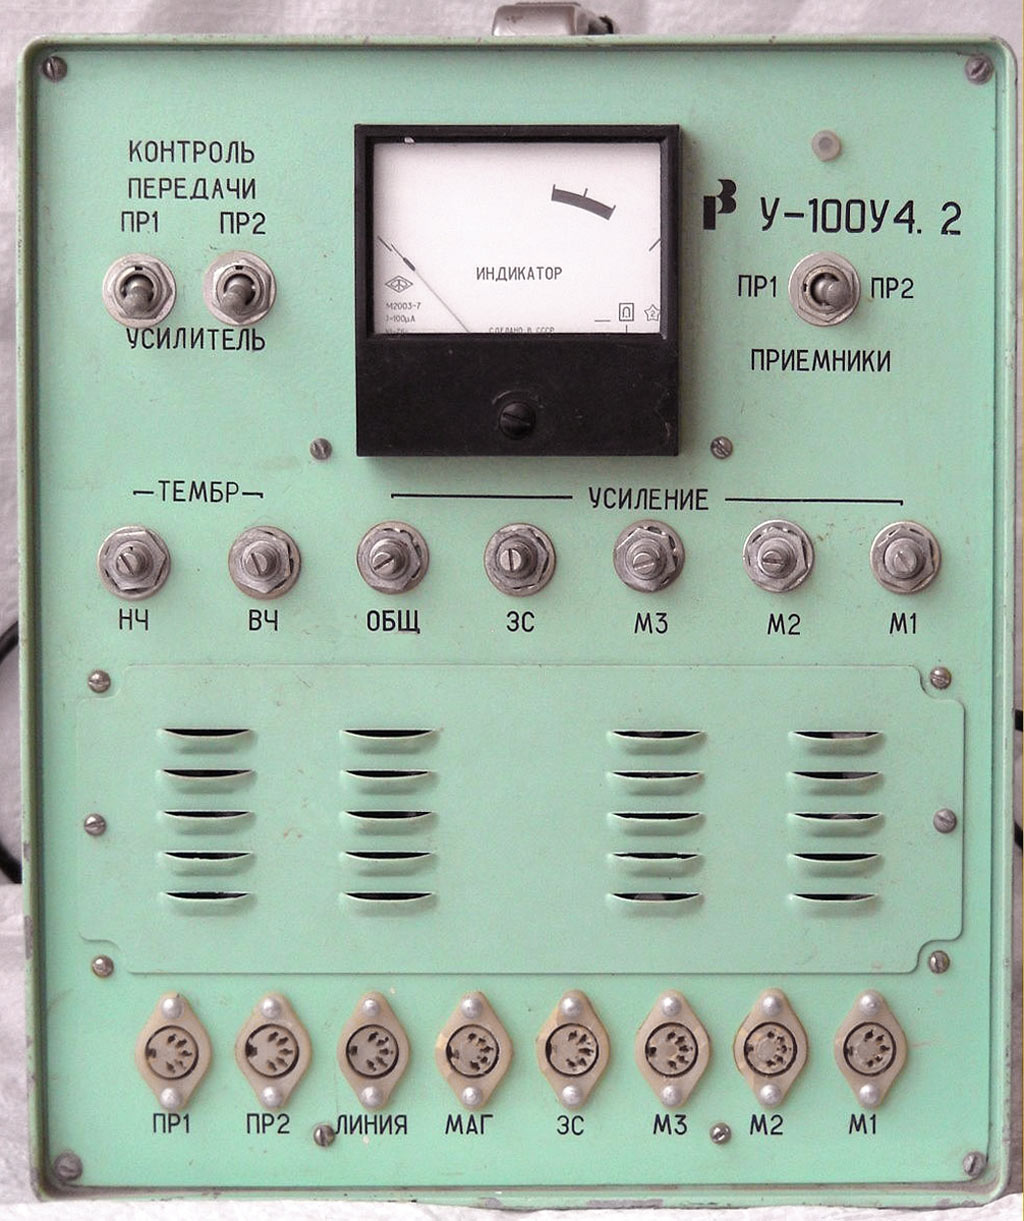 У-100У4.2